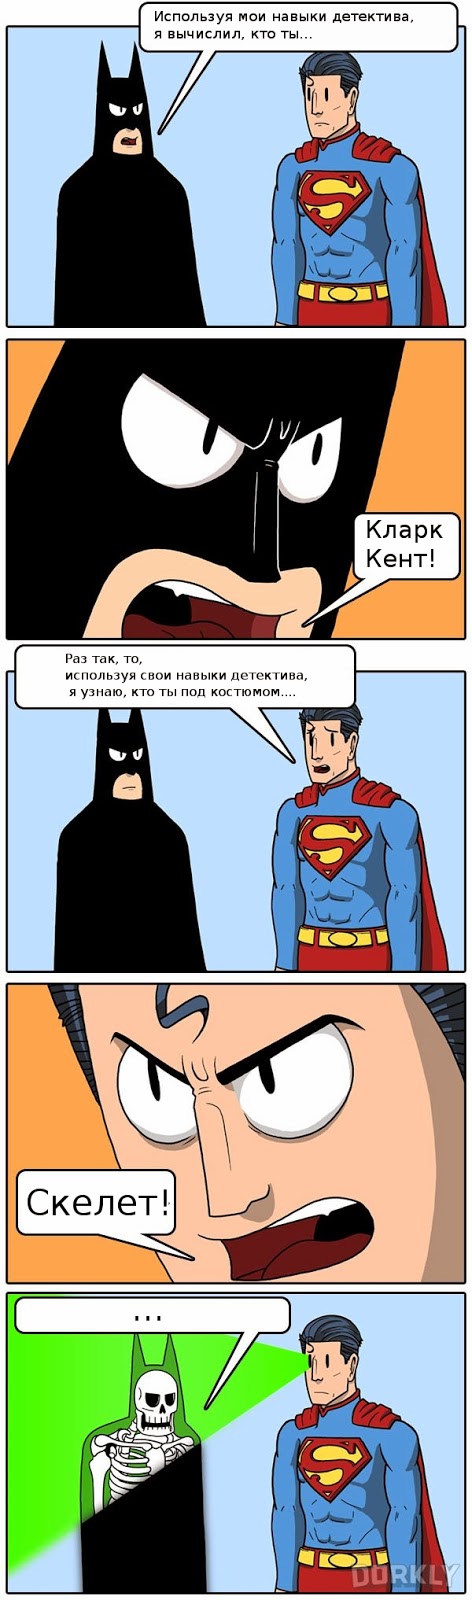 Бэтмен против Супермена: тайна личности (картинка)